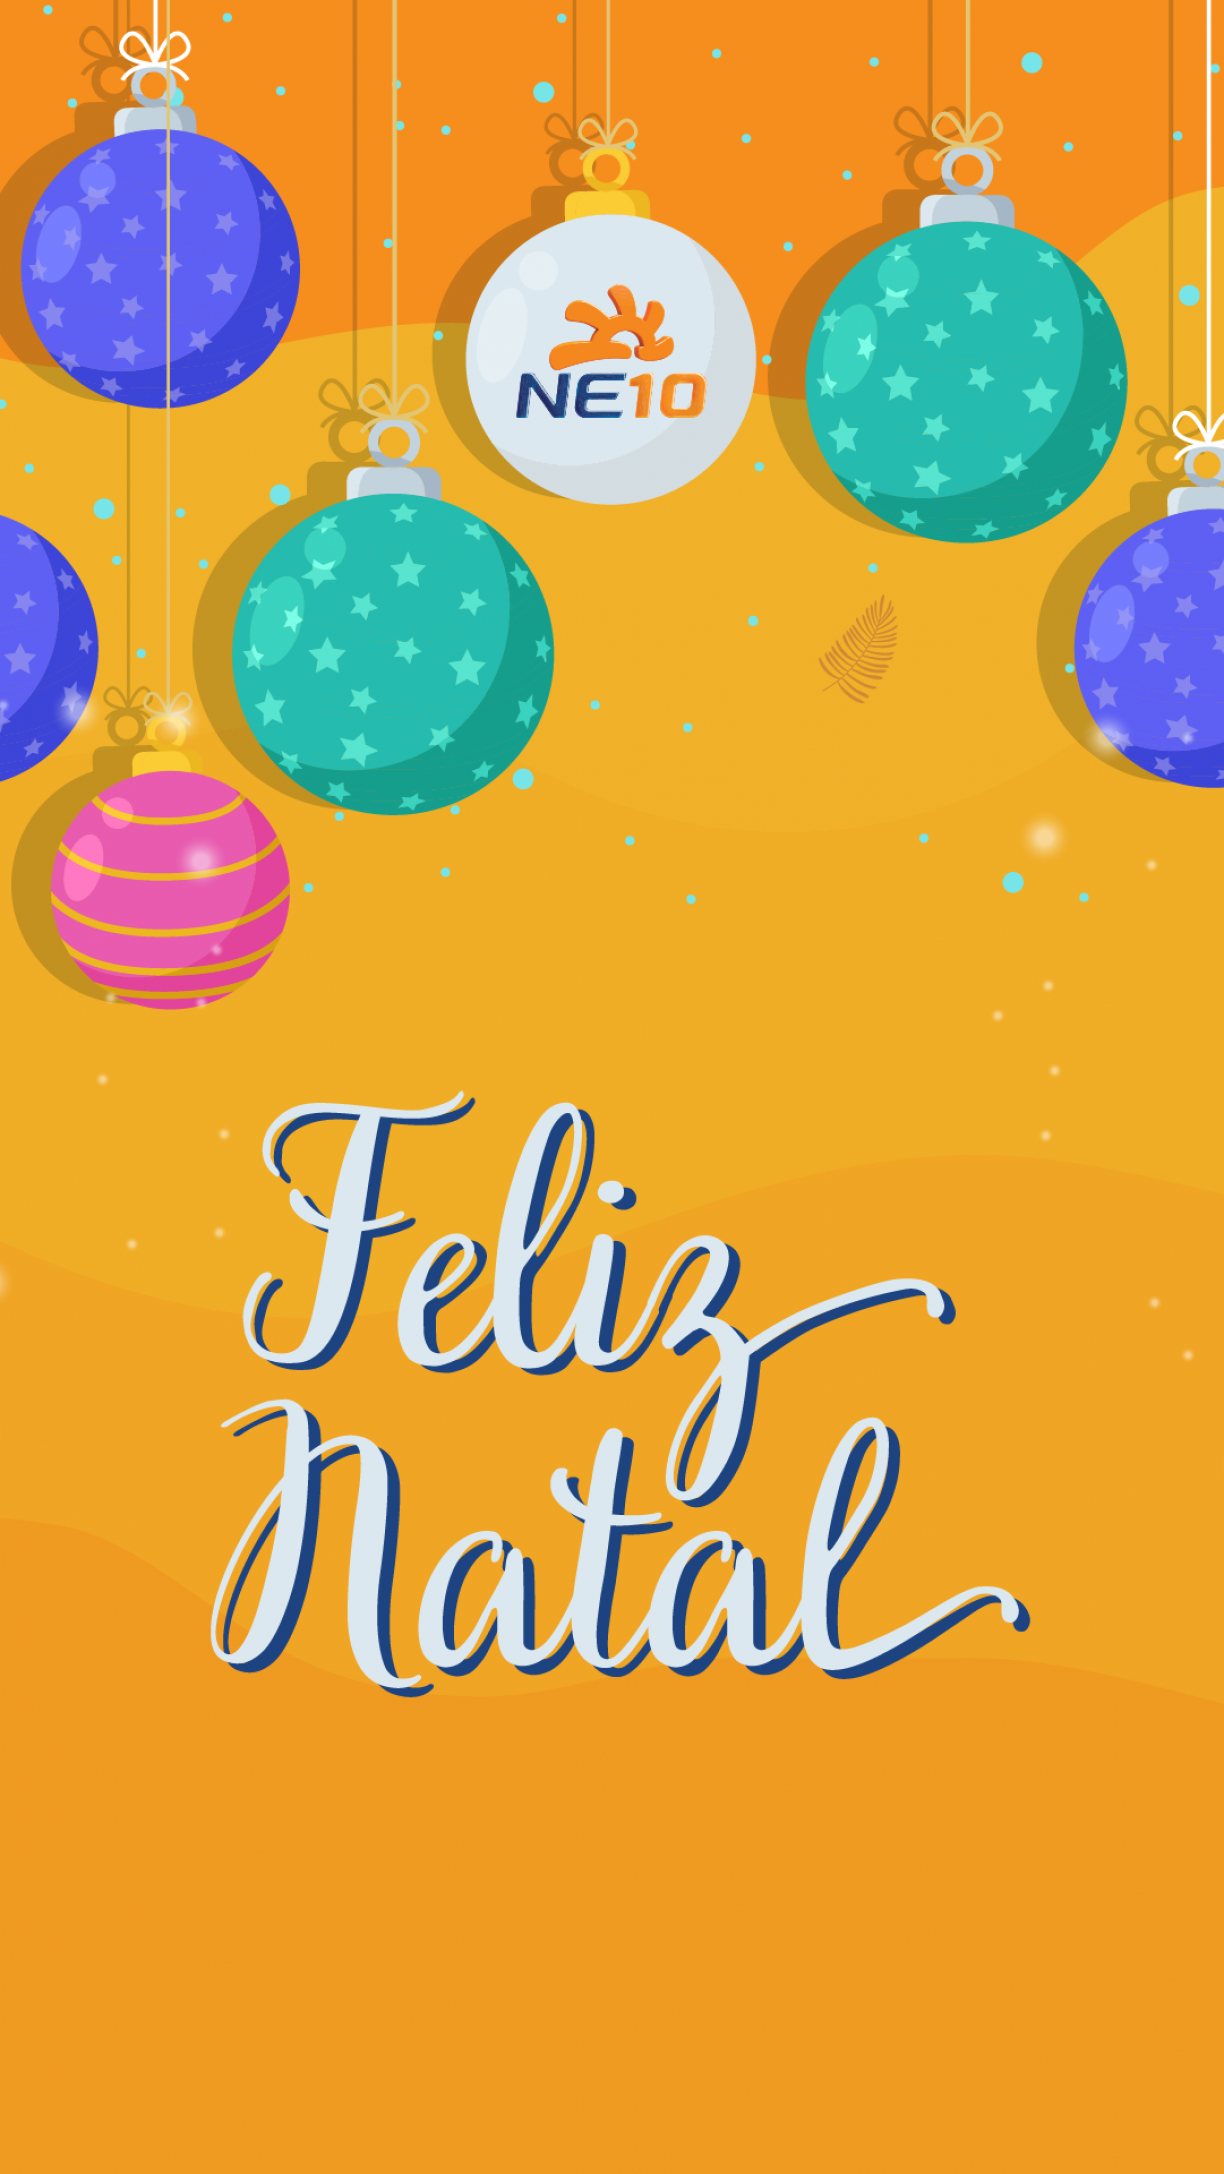 MENSAGEM DE NATAL: Confira mensagens e frases de FELIZ NATAL para família,  amigos, colegas de trabalho e clientes